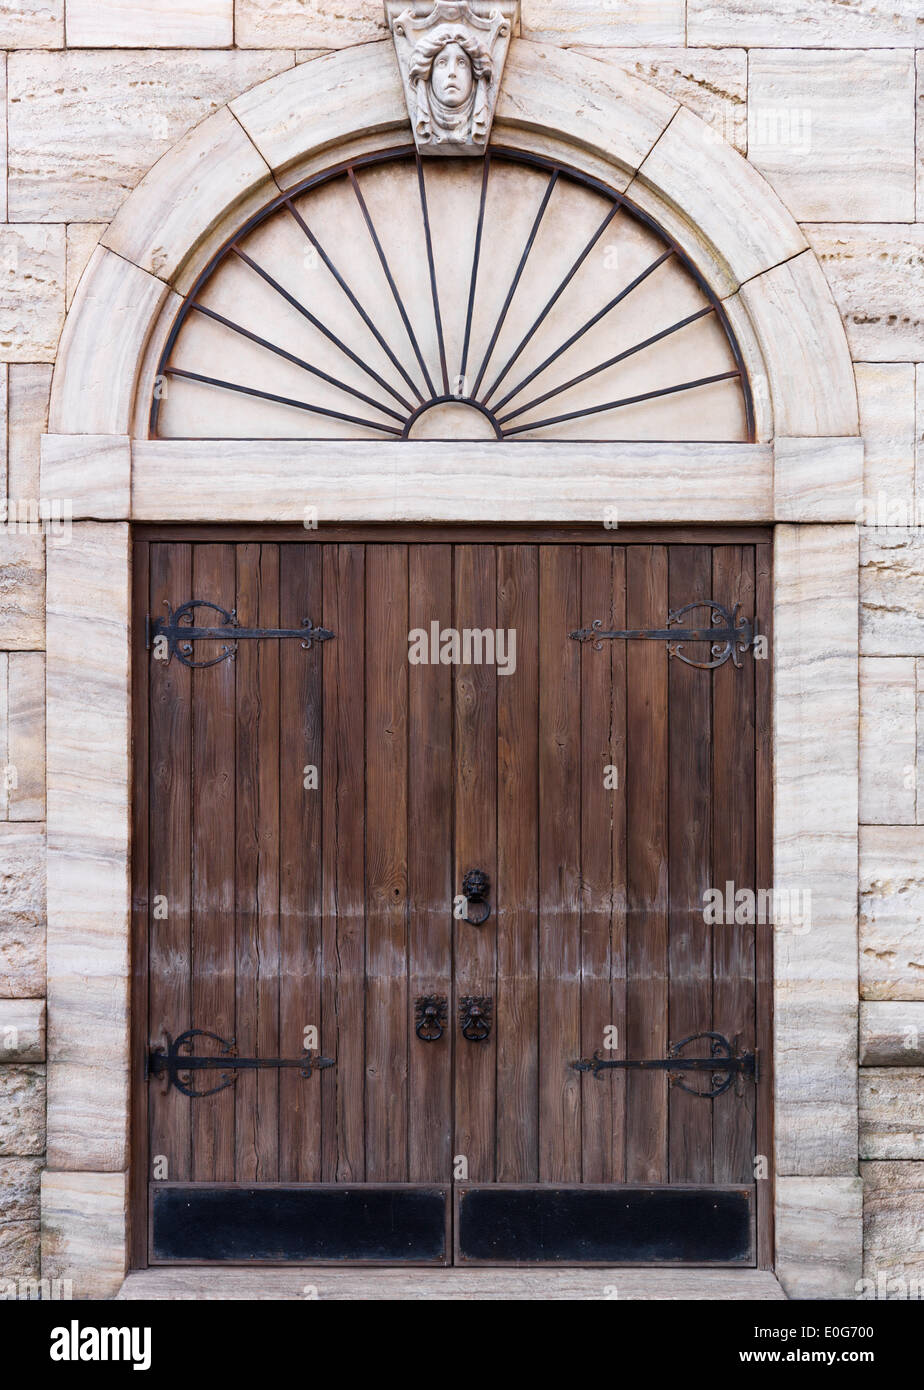 Old wooden door of Venetian building, architectural detail texture Stock Photo